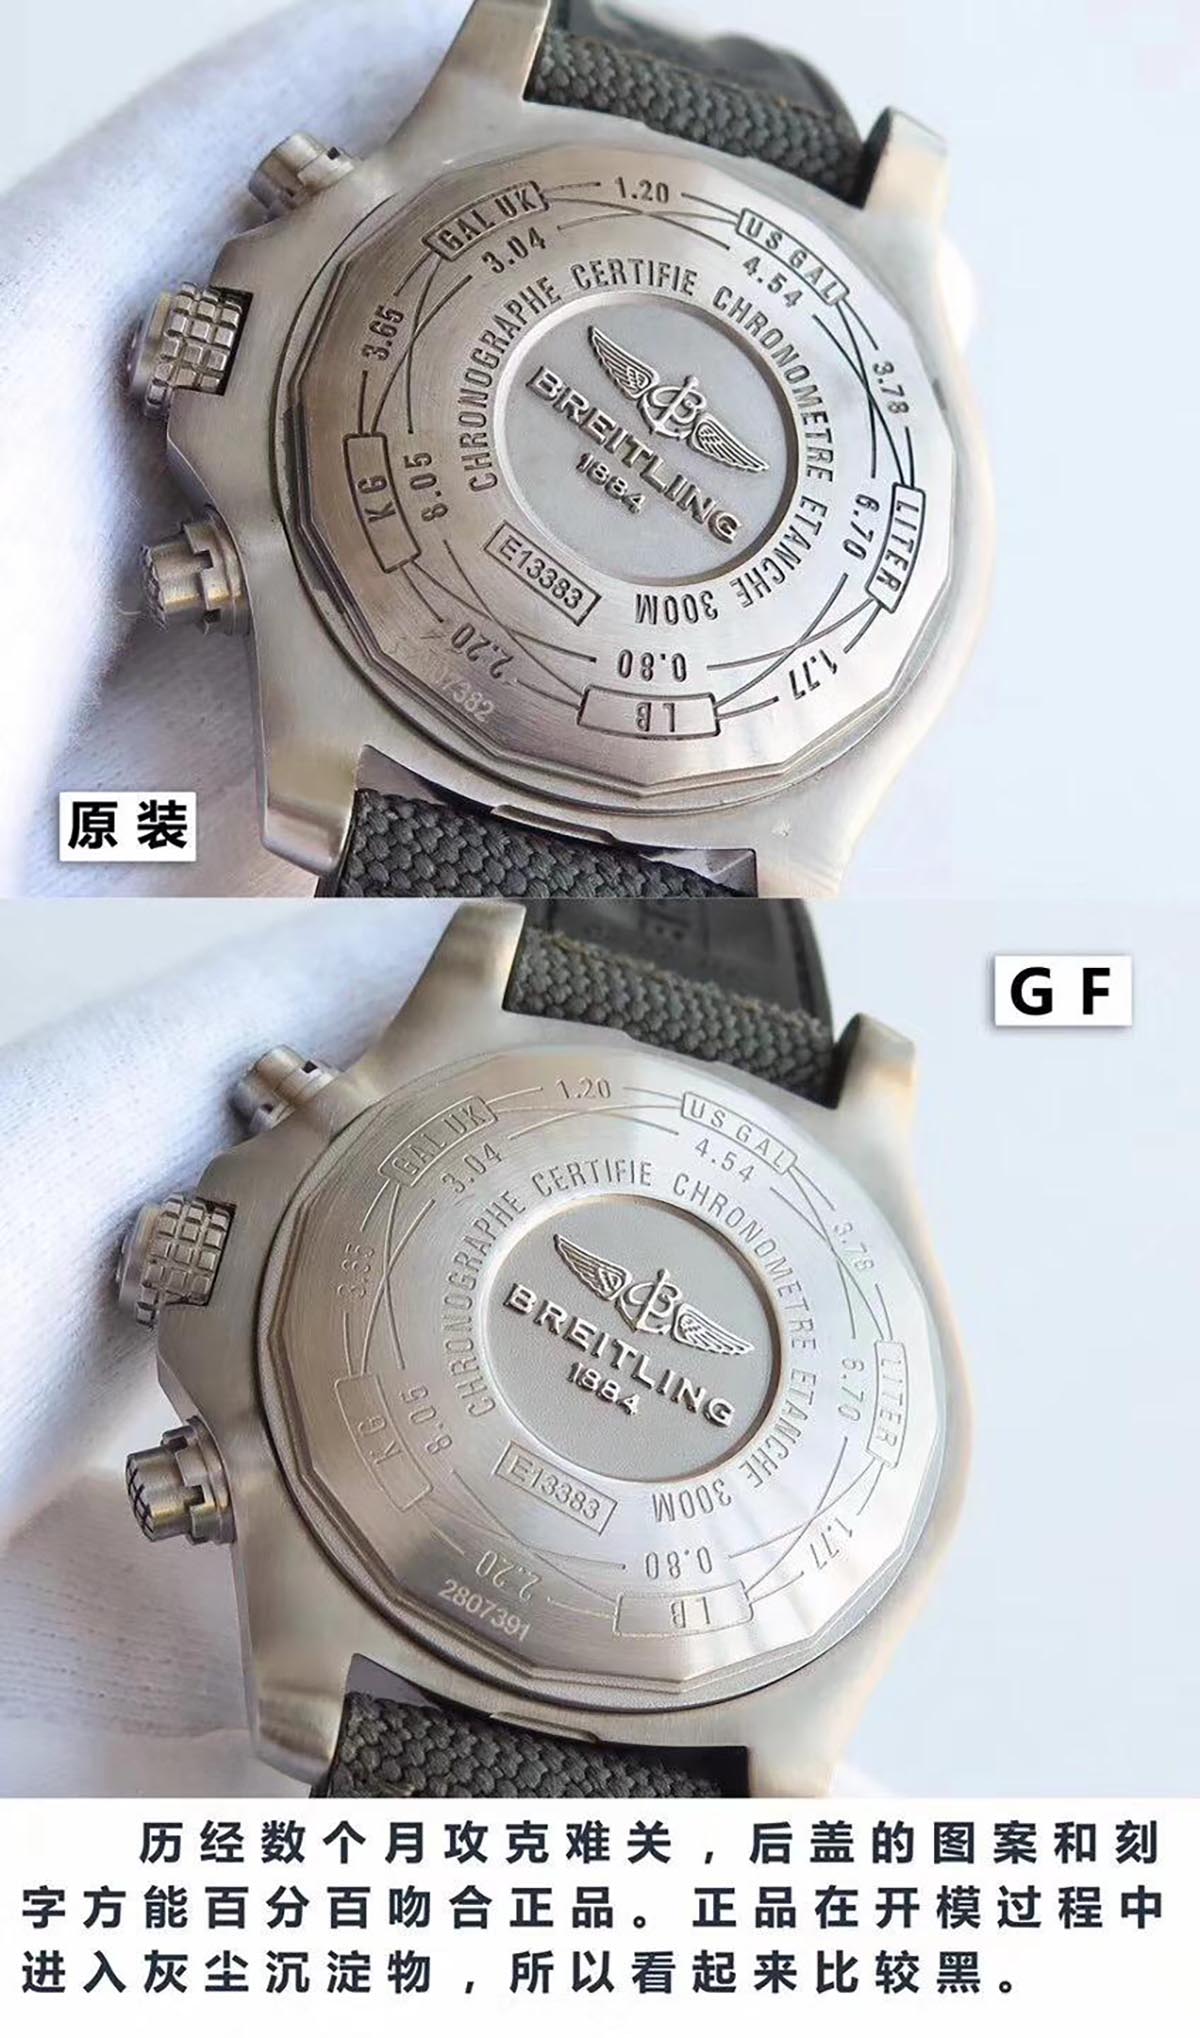 GF厂百年灵复仇者战机45mm男士腕表对比正品评测